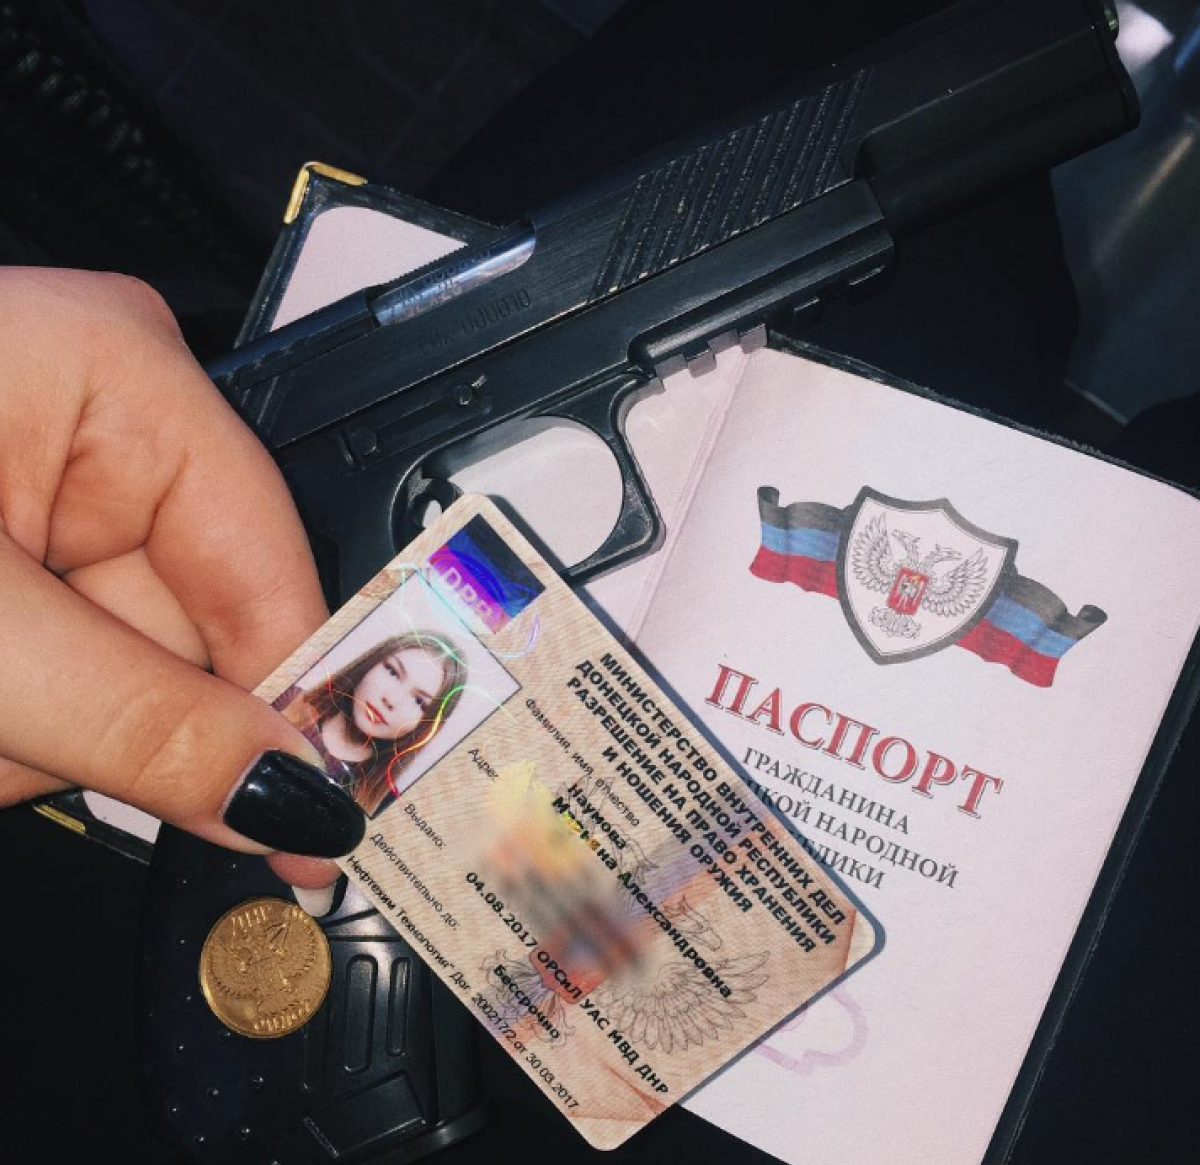 Российская спортсменка Наумова получила «наградное оружие» от «ДНР»